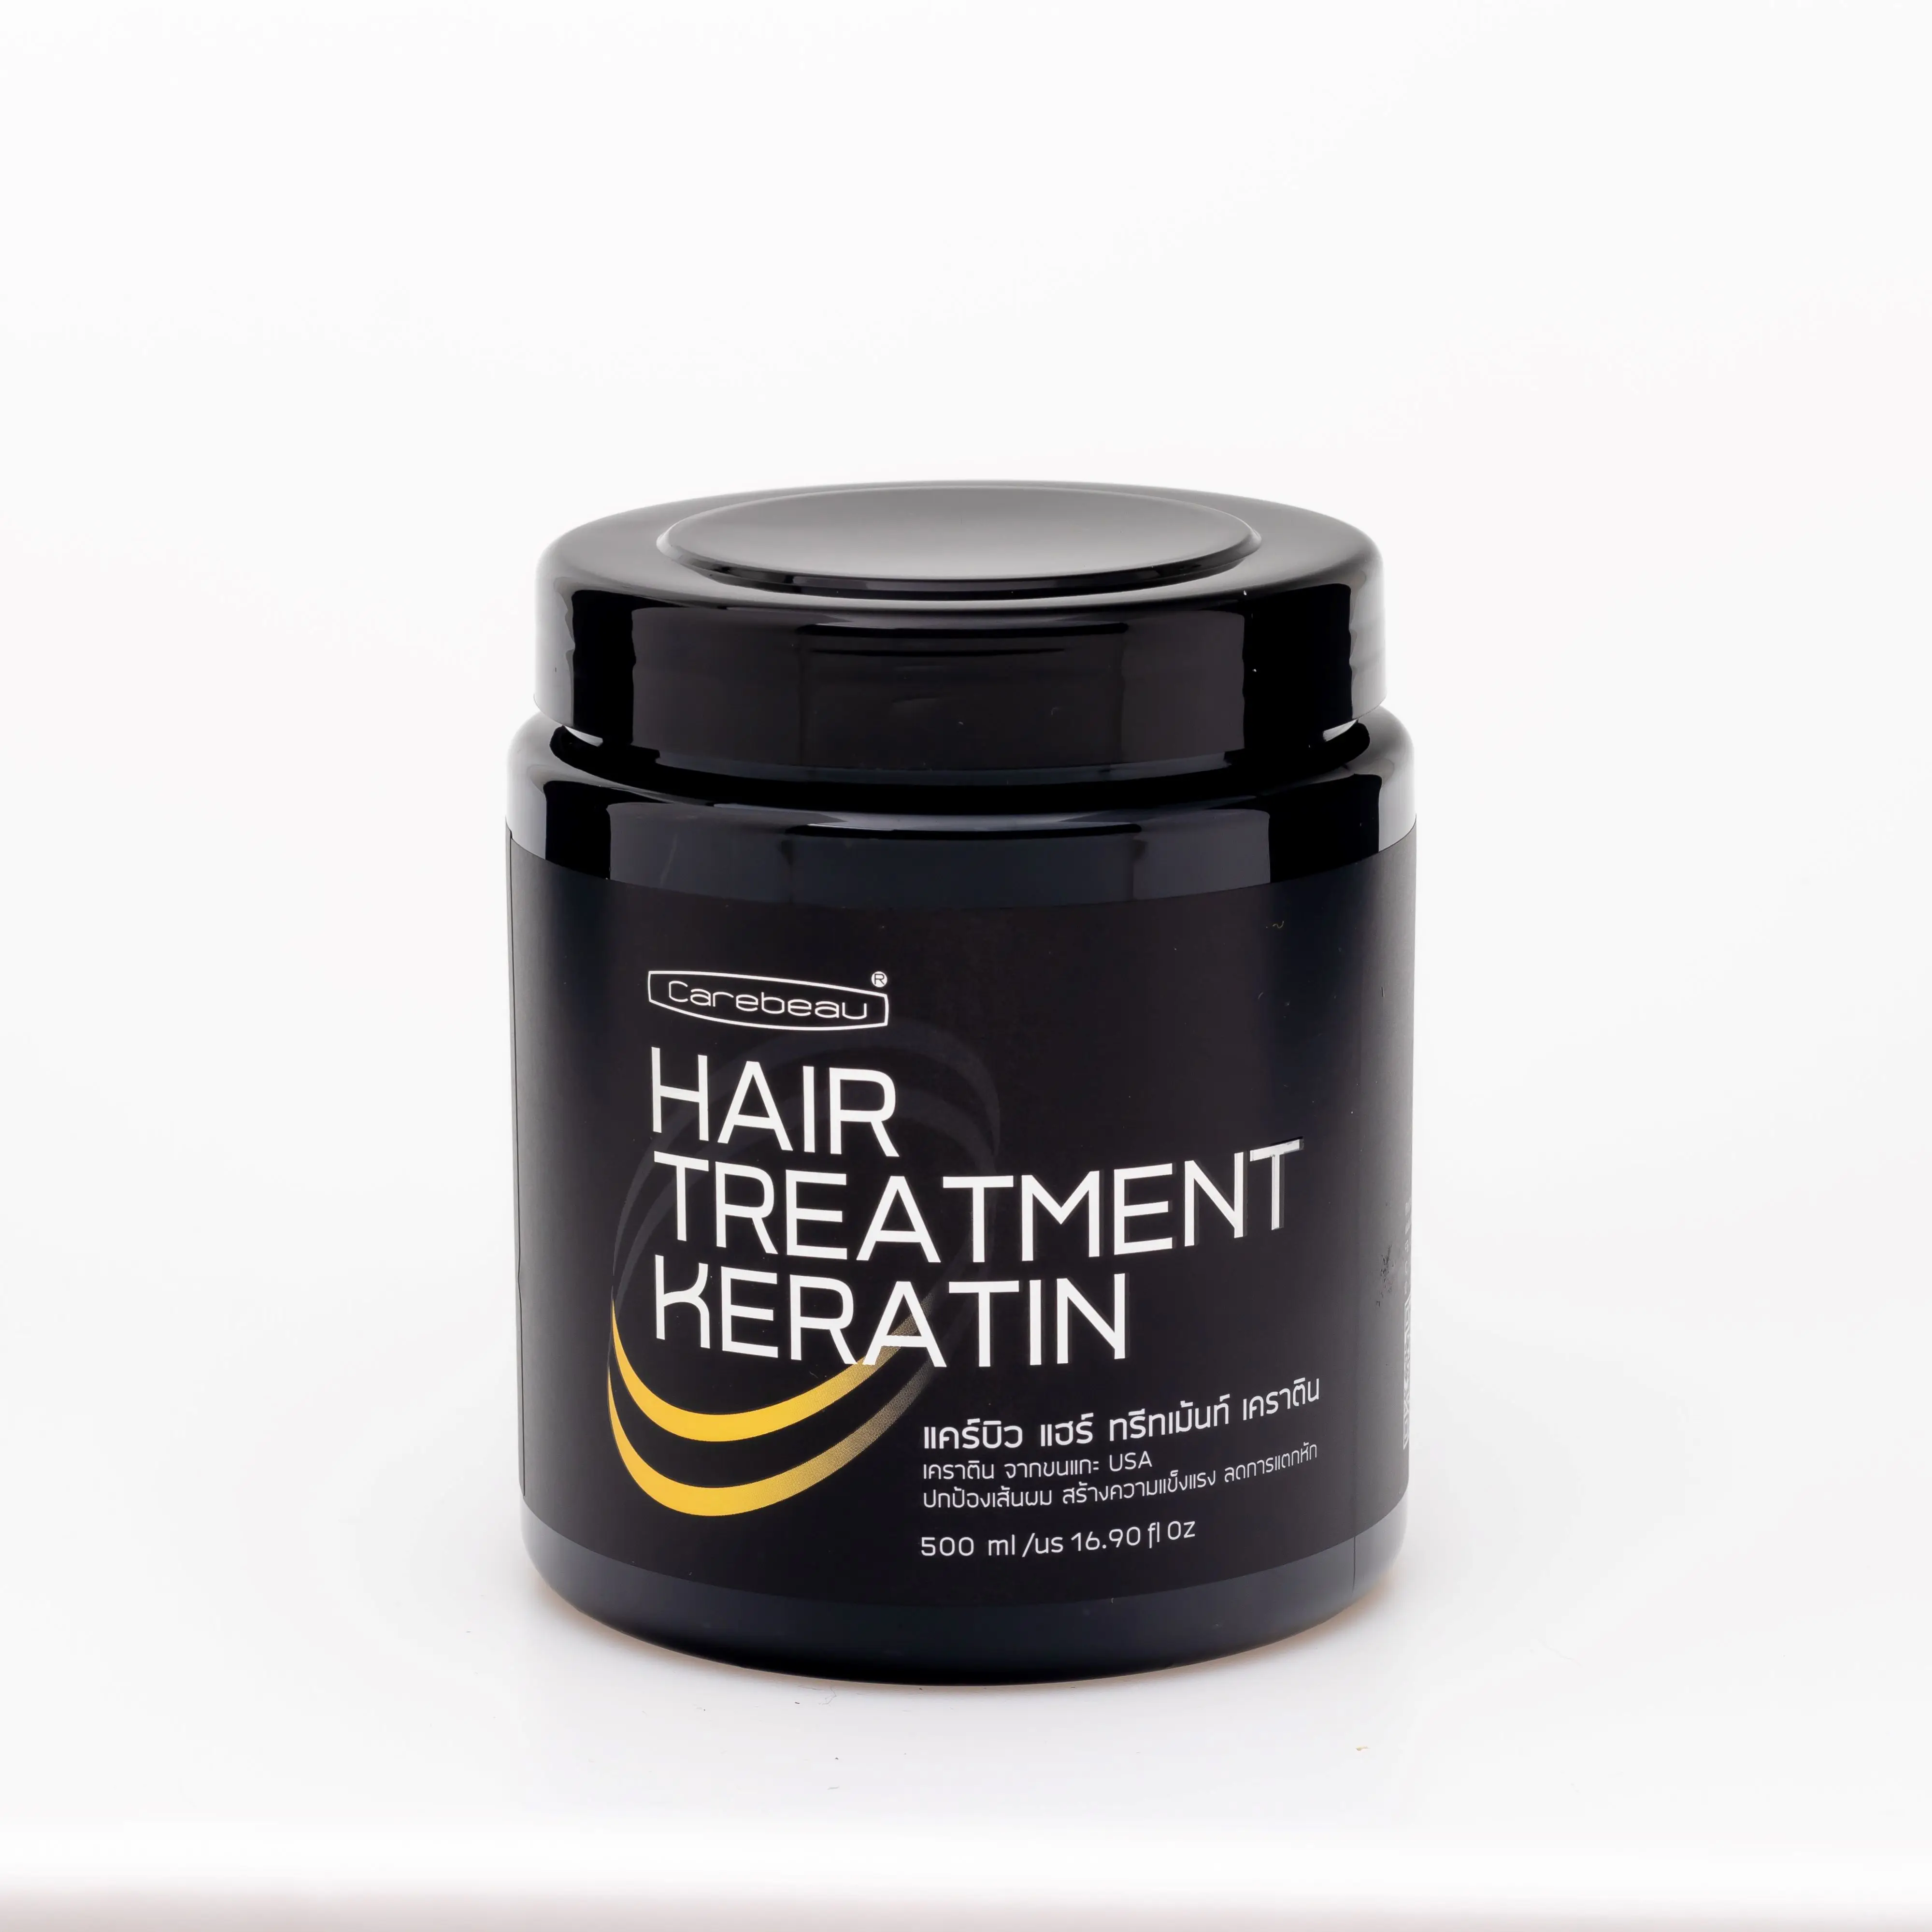 Carebeau Hair Treatment Keratin Sachet (50g) - Buy Keratin Treatment ...